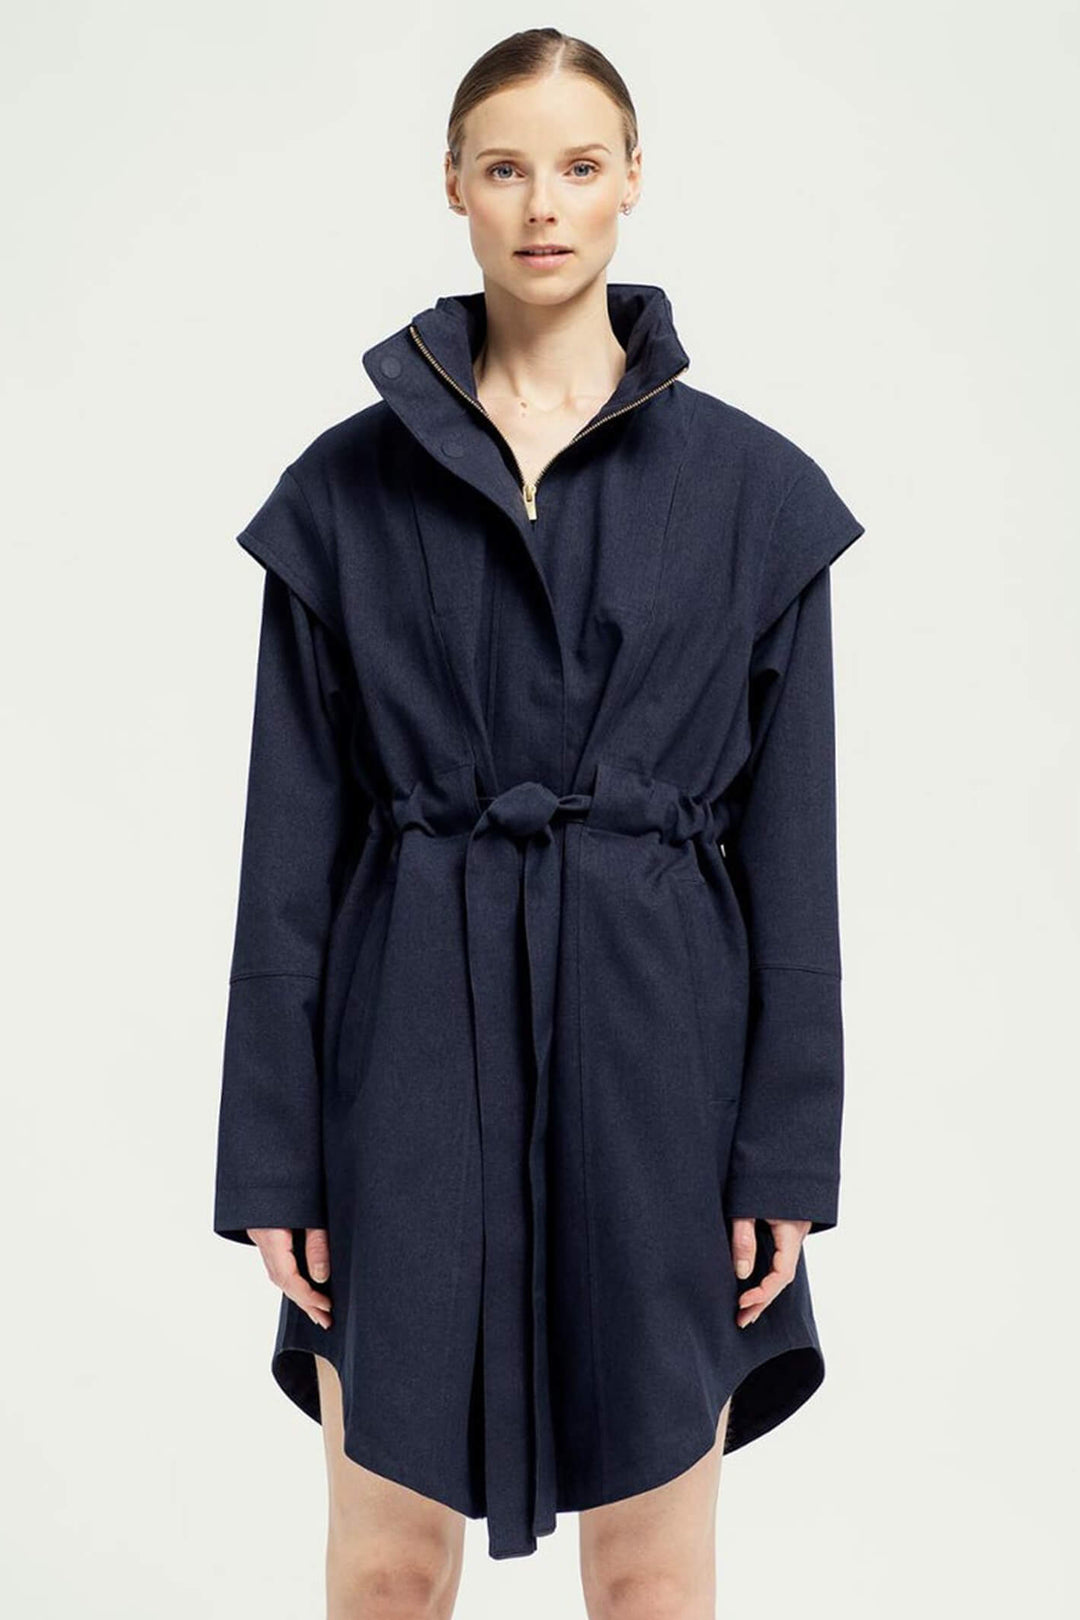 BRGN 15032T2 095 New Dark Navy Monsun Wateproof Coat - Olivia Grace Fashion